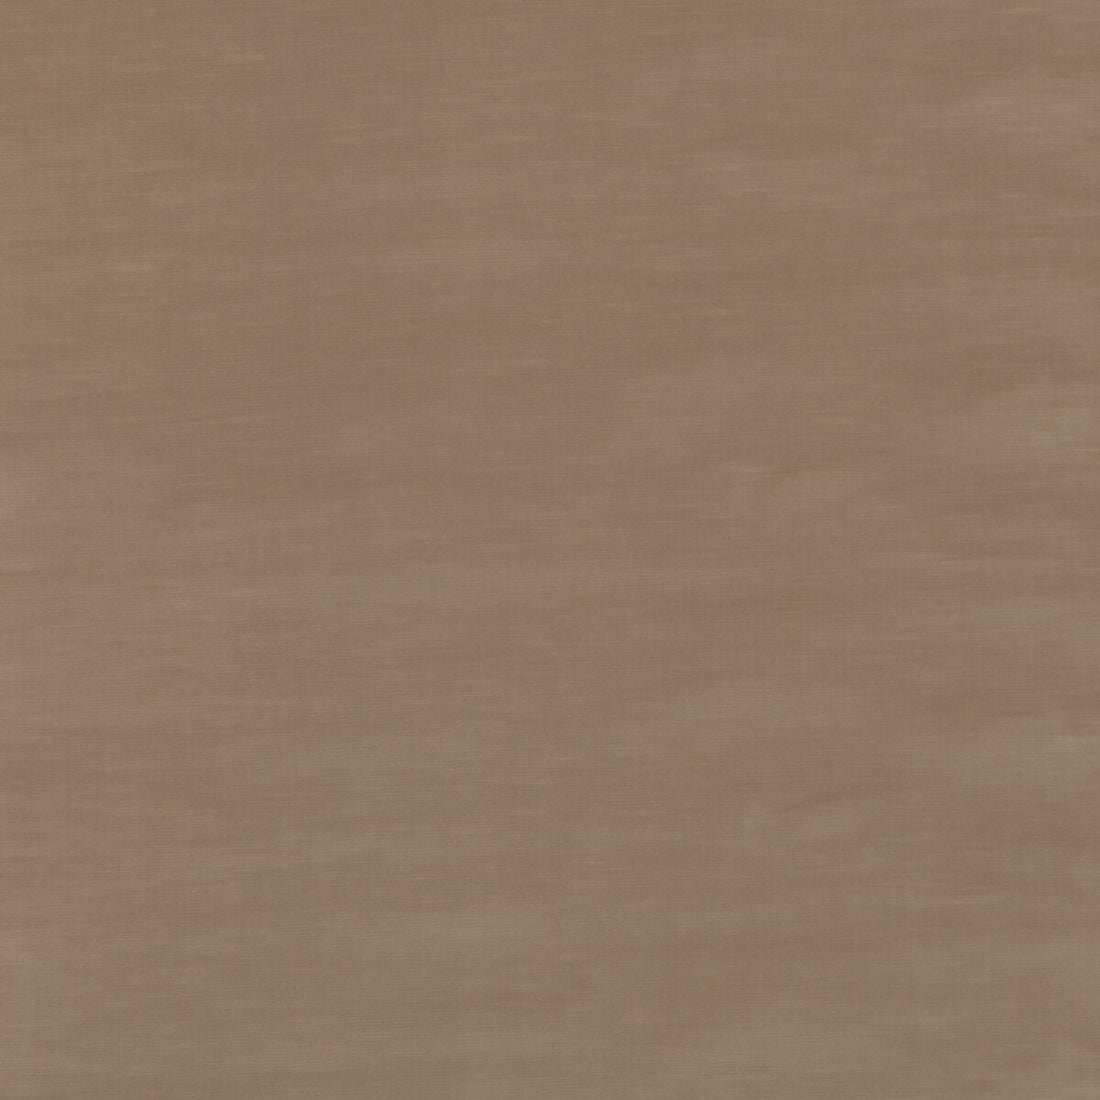 Quintessential Velvet fabric in camel color - pattern ED85359.170.0 - by Threads in the Quintessential Velvet collection